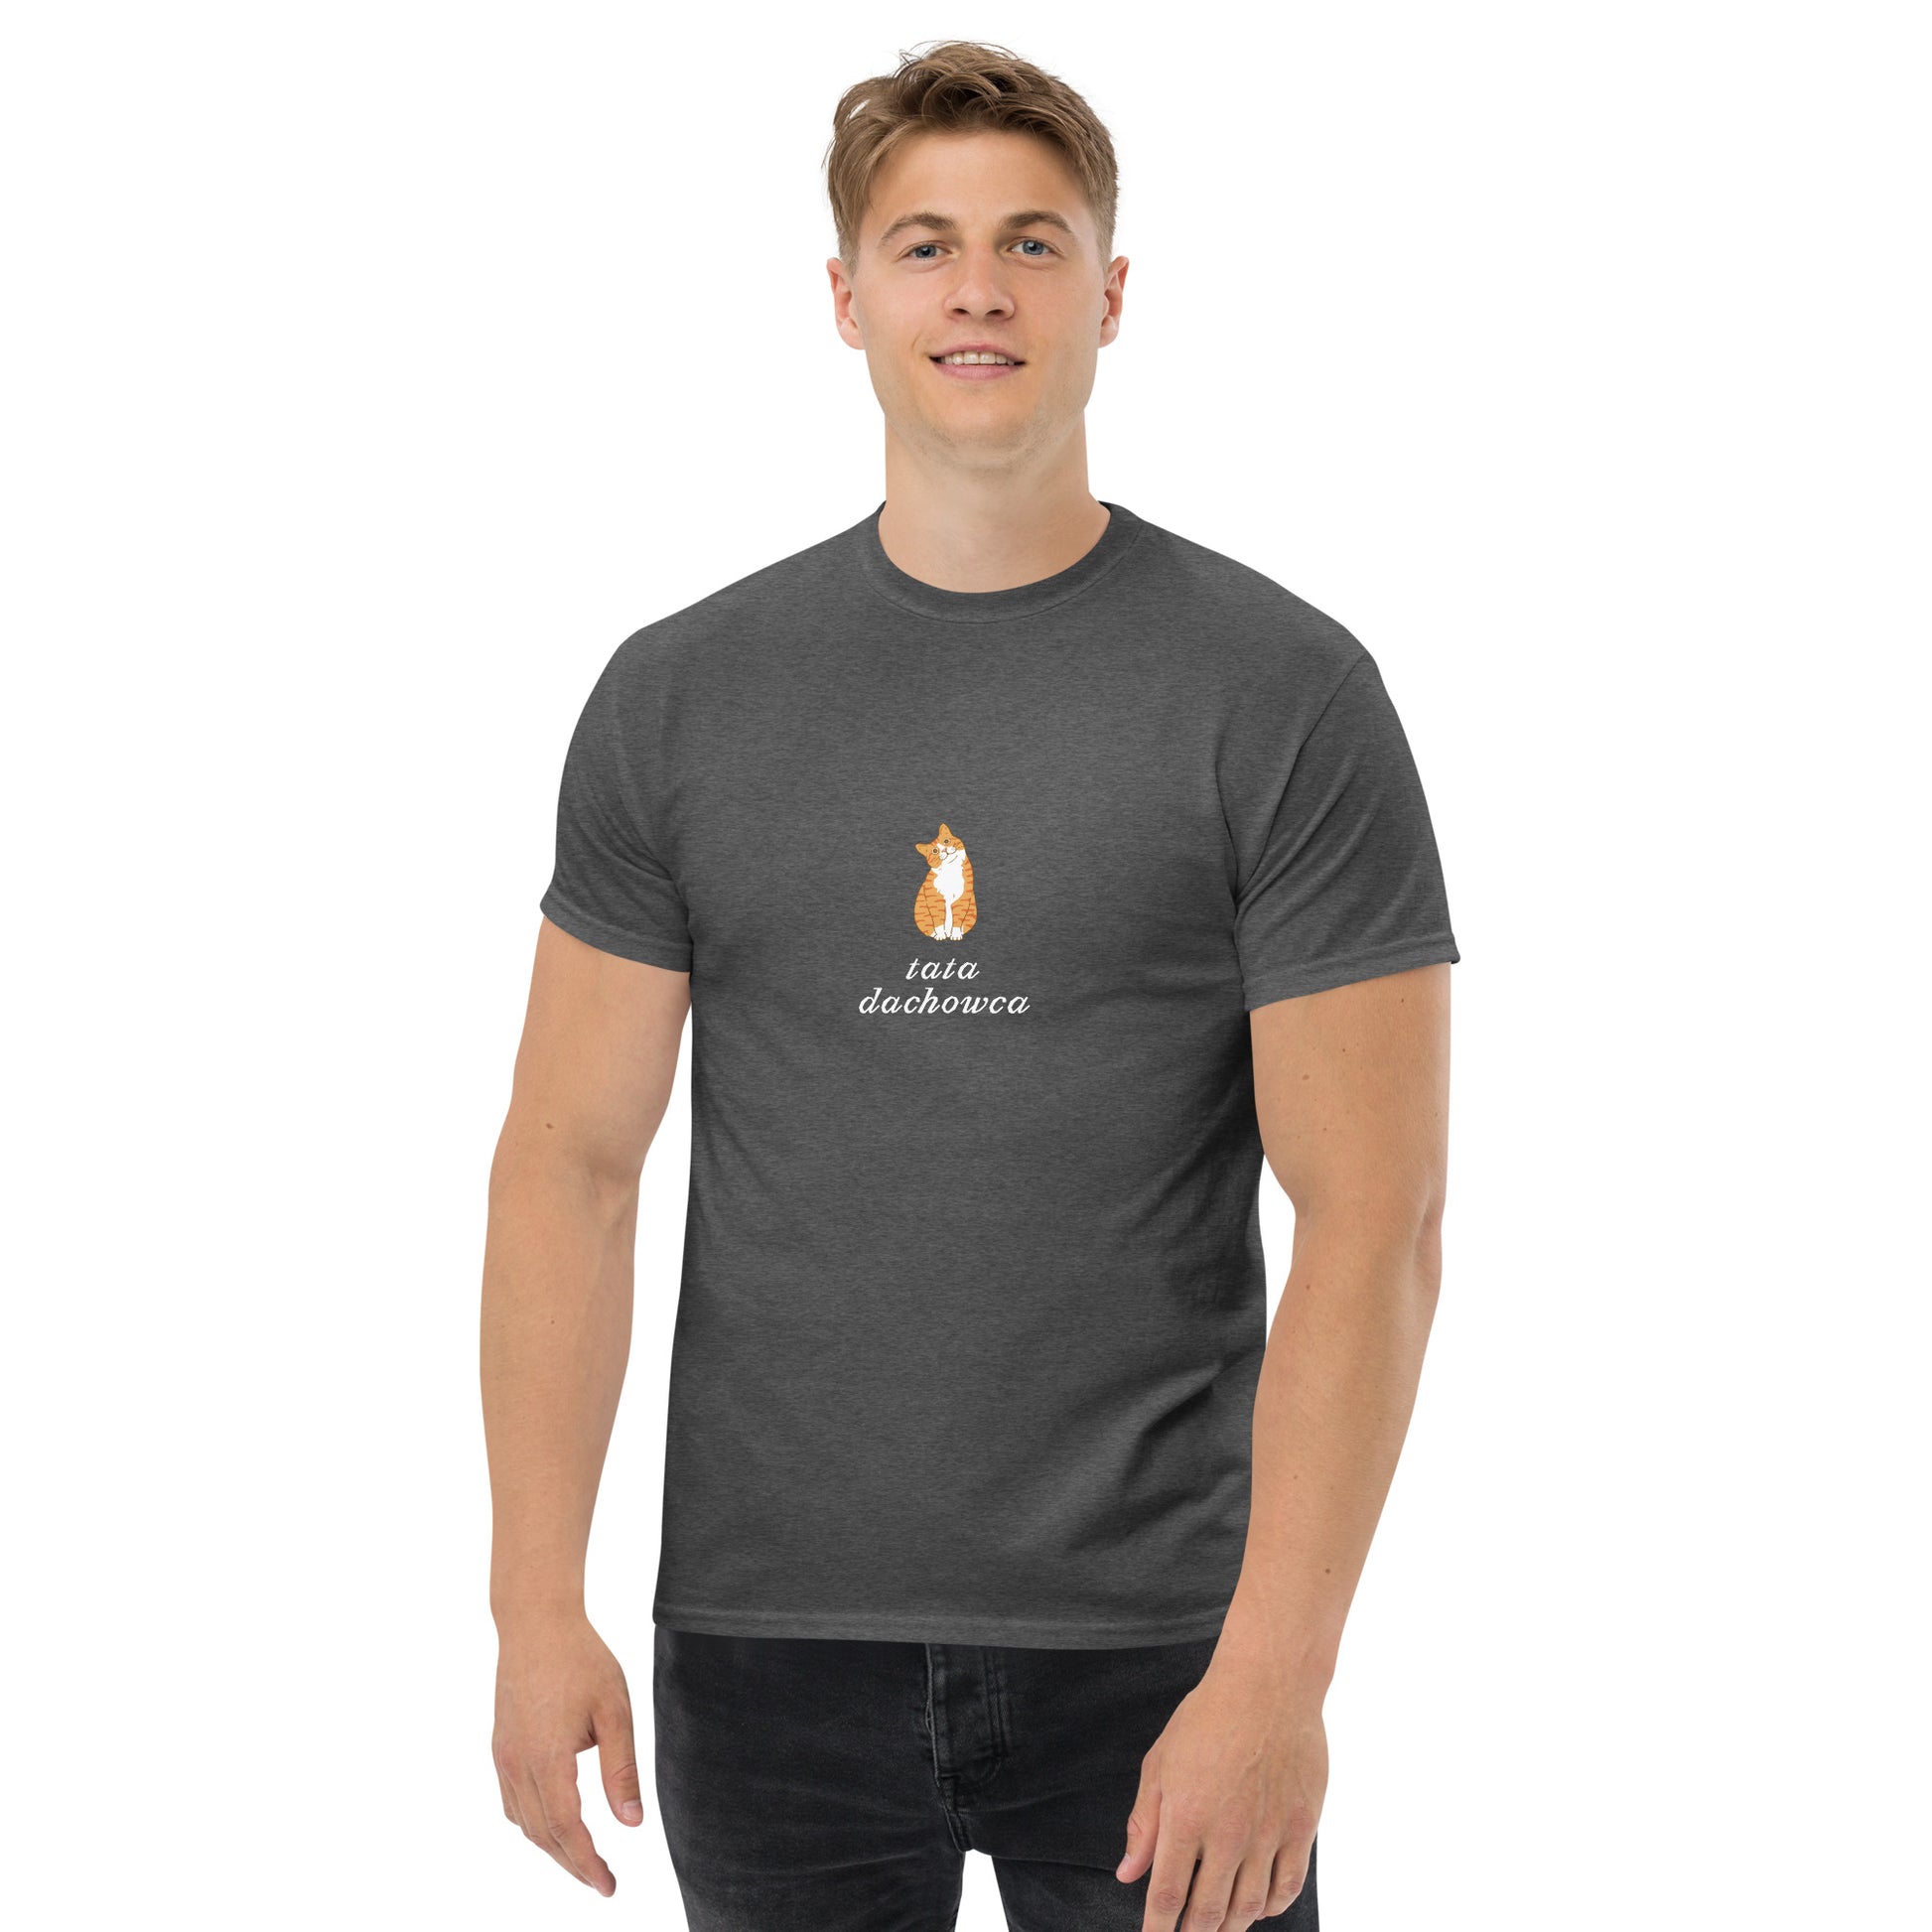 T-shirt męski "Tata dachowca", ciemny szary,prezent dla kociarza 4